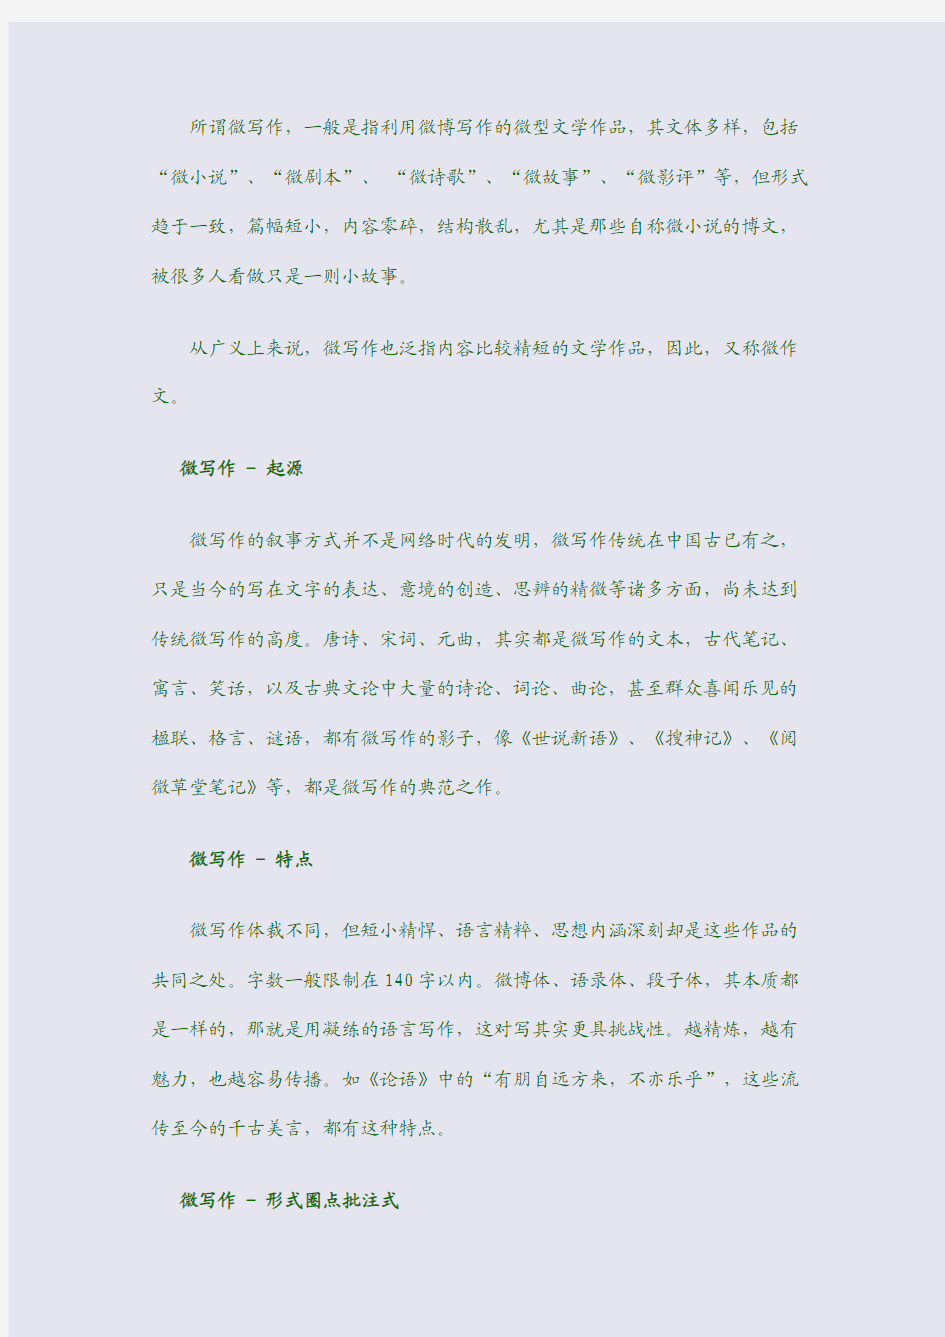 2014年高考北京语文新增题型：“微写作”